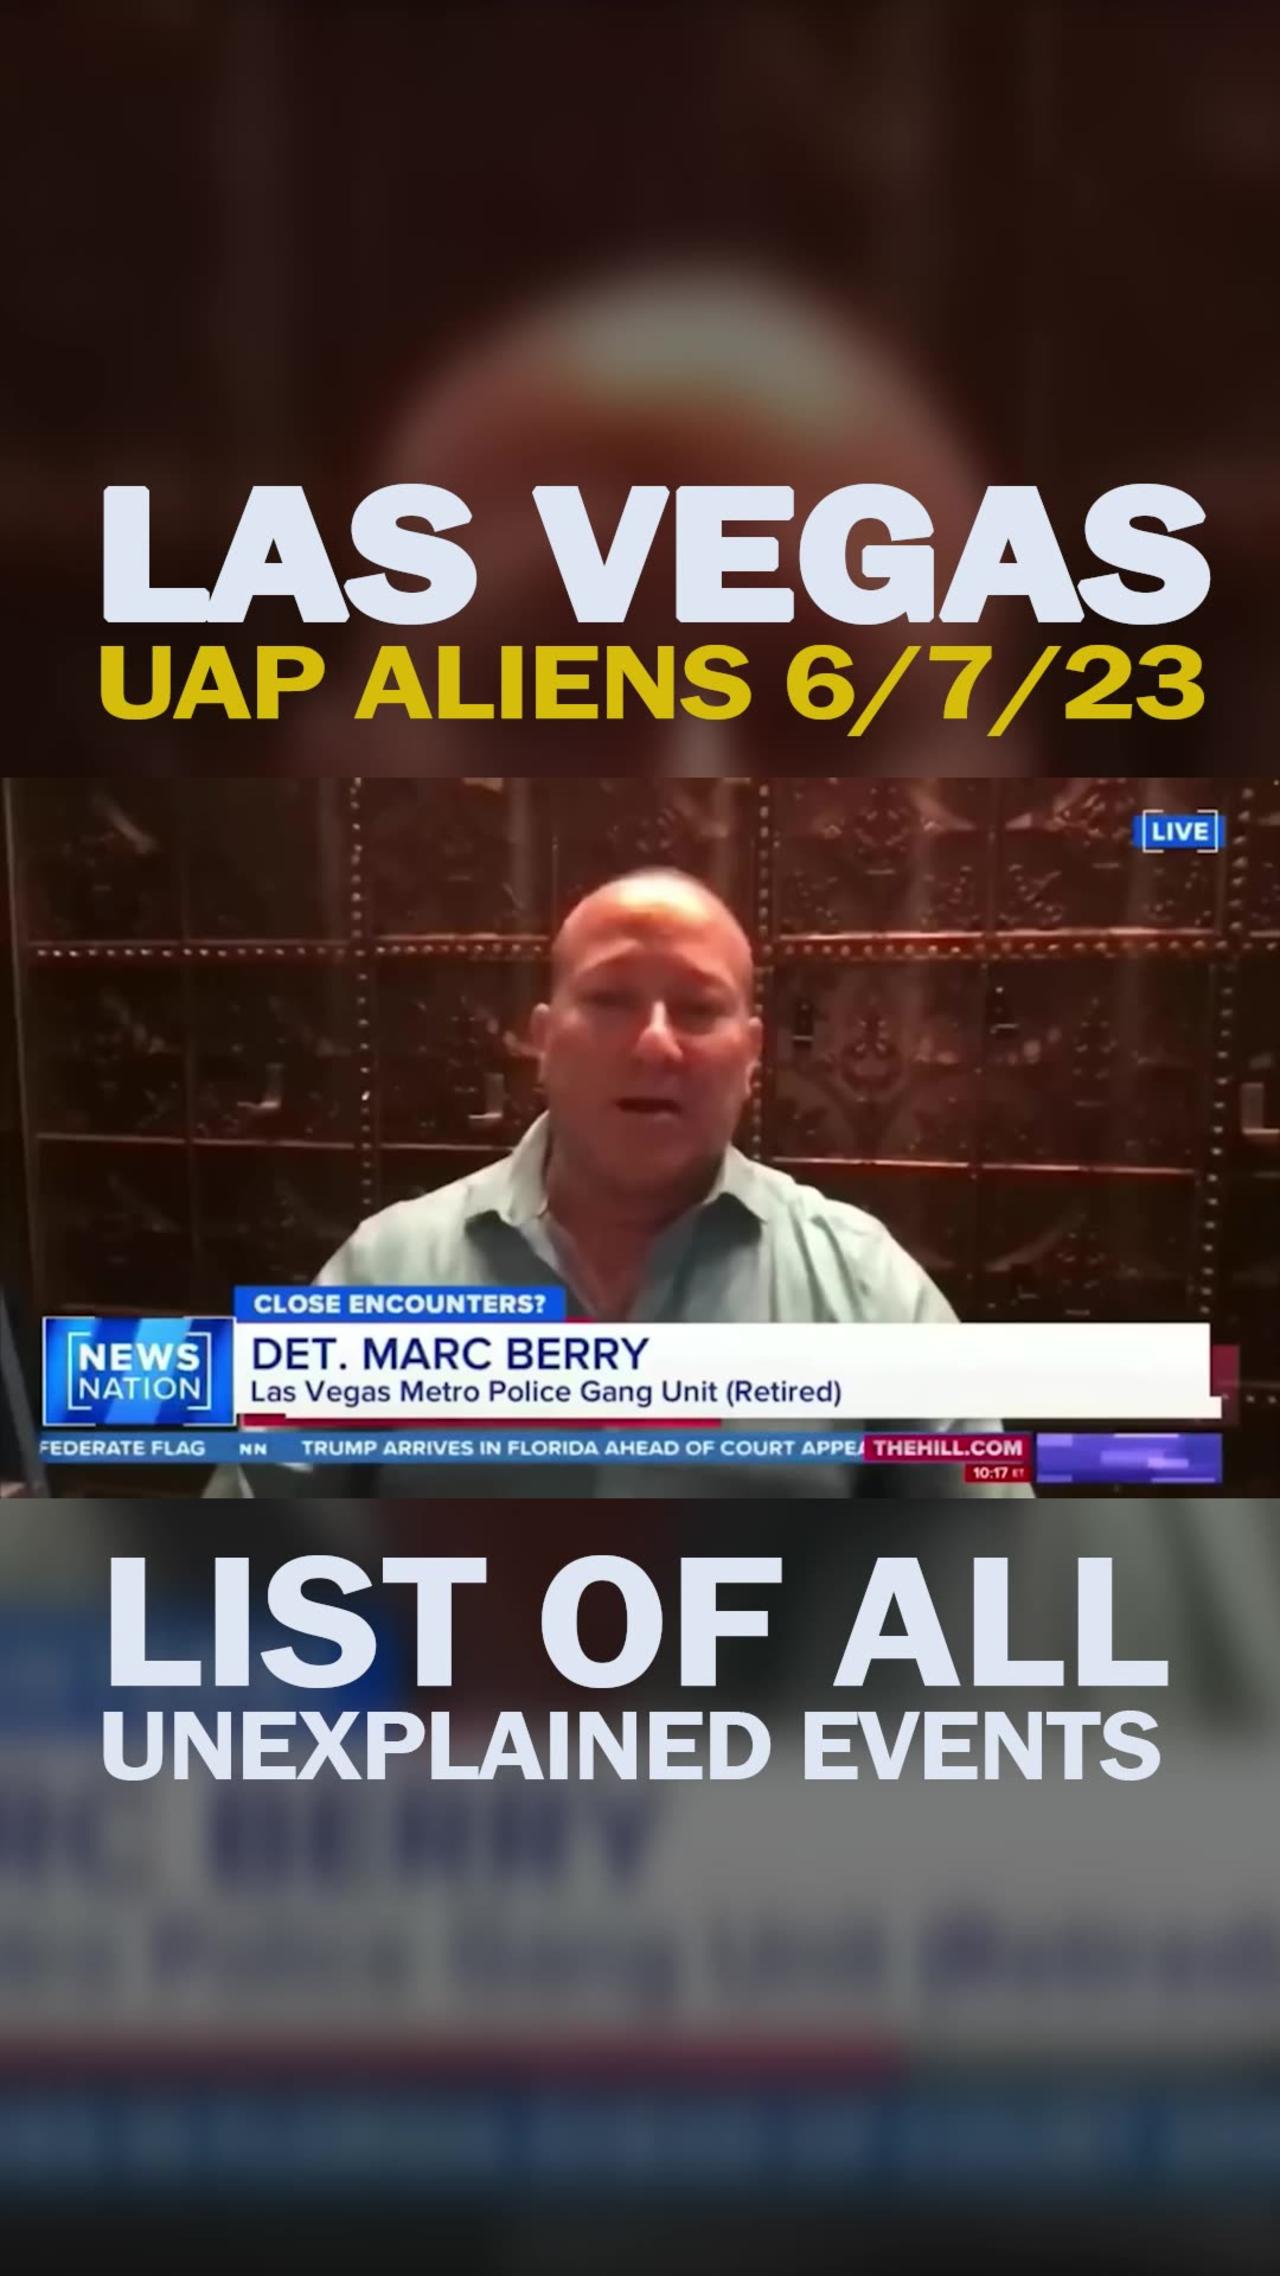 Las Vegas UFO 6/7/23 Backyard Video - List of Unexplained Events, UAP Crash and Alien Filmed